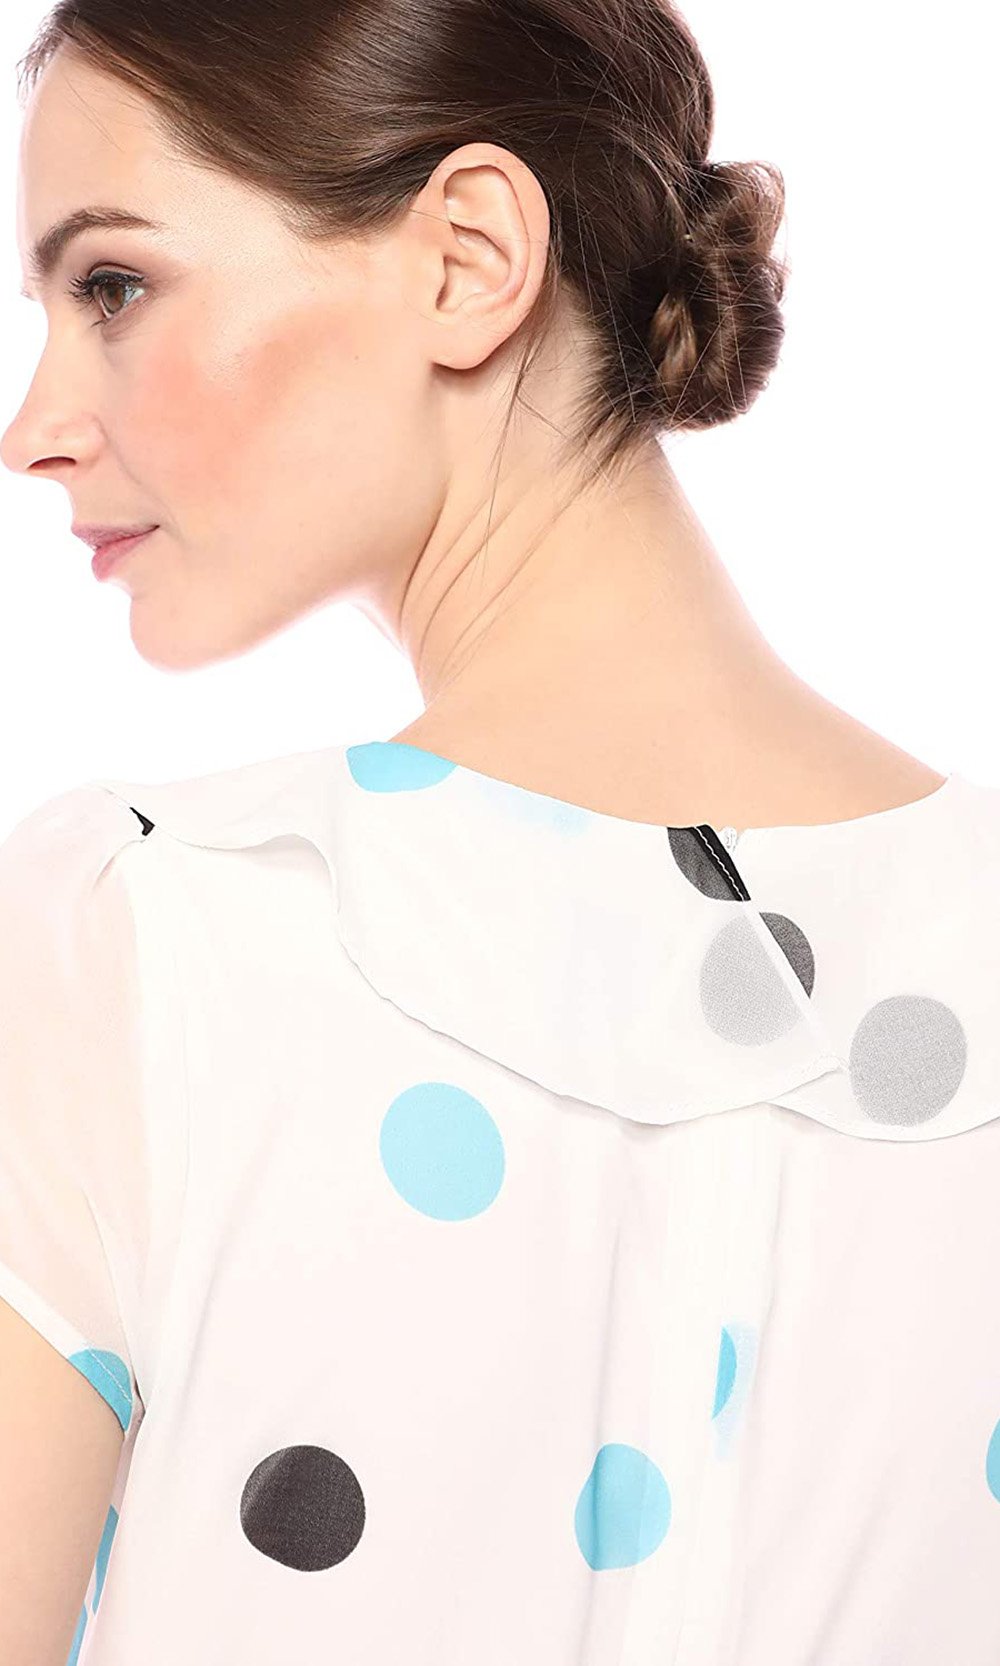 Gabby Skye - 56814MG Polka Dot Flutter Dress In Multi-Color